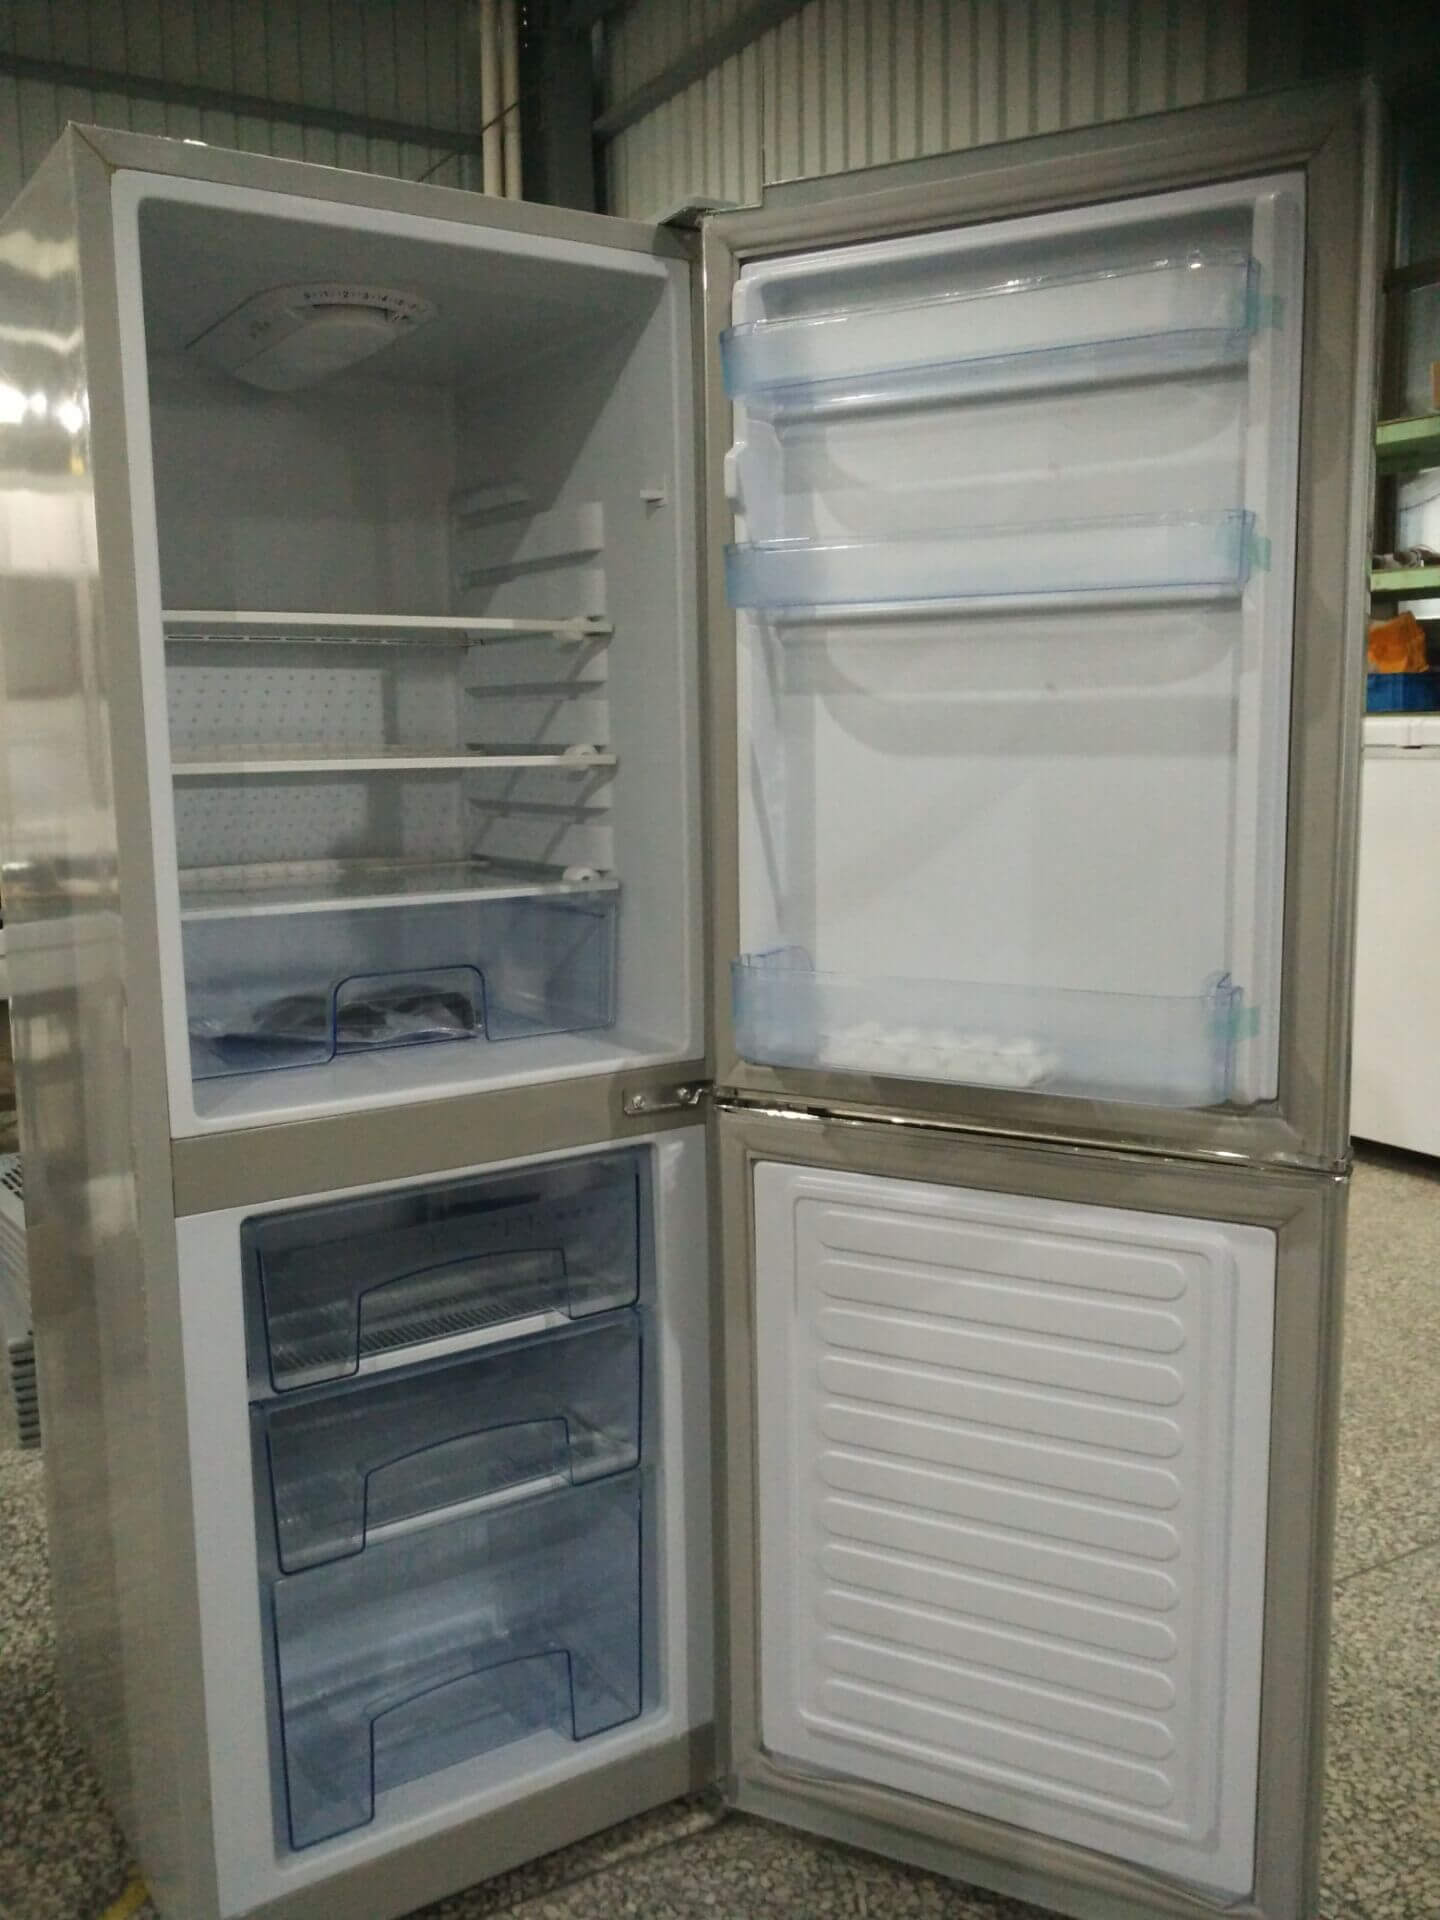 Smeta Solar refrigerator Refrigerator bulk photo